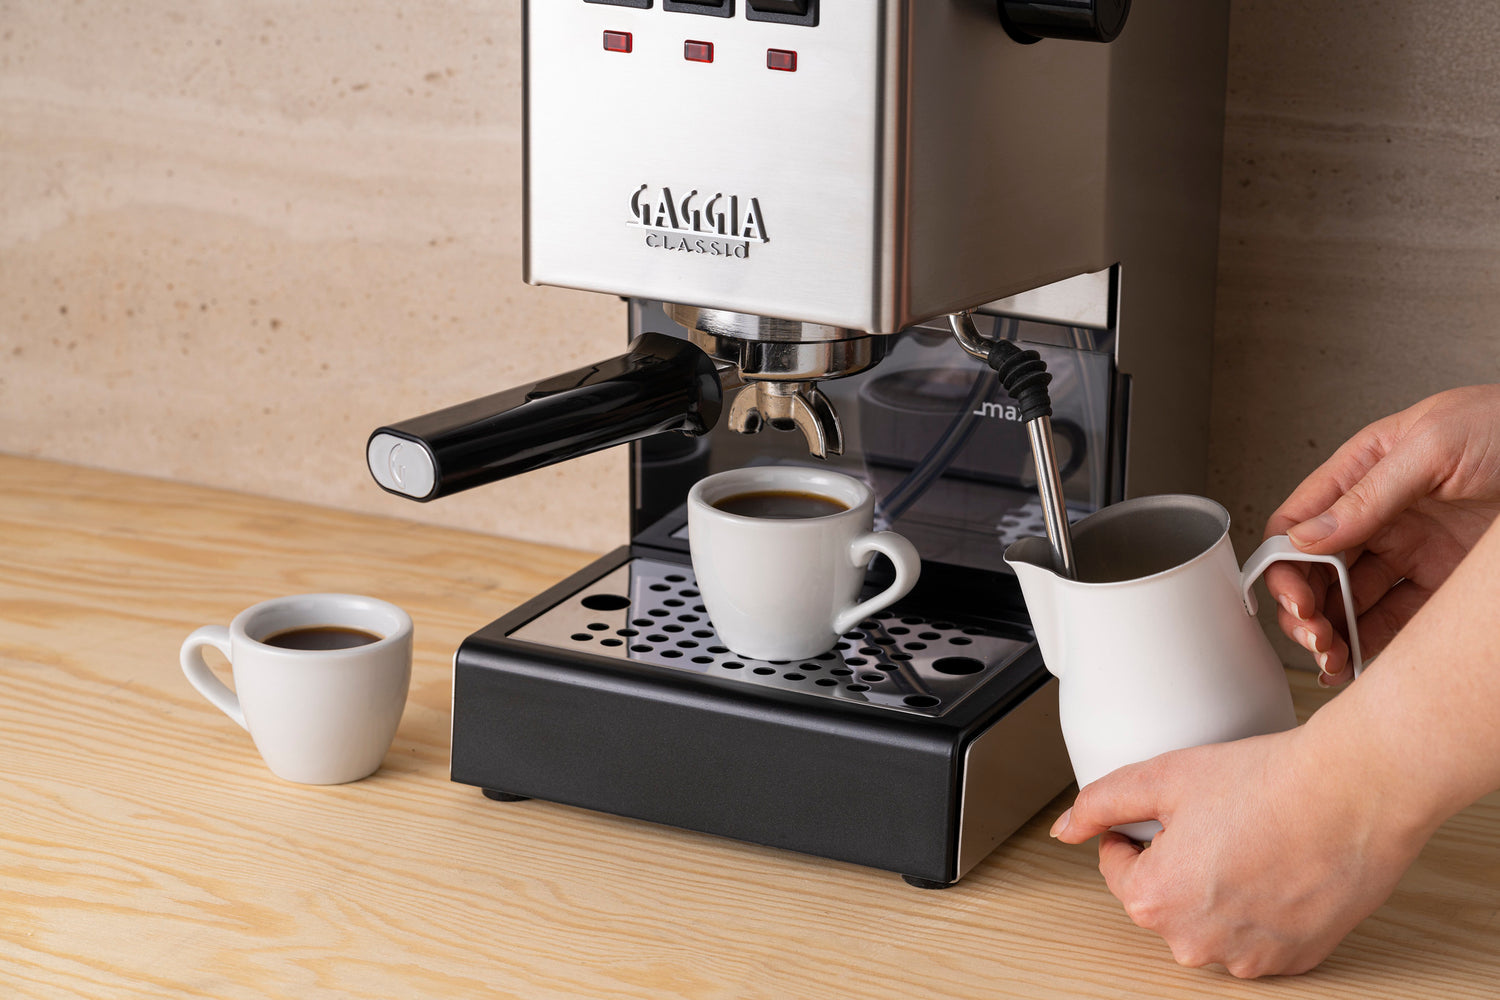 home barista, home espresso machines, gaggia espresso machine, home espresso maker